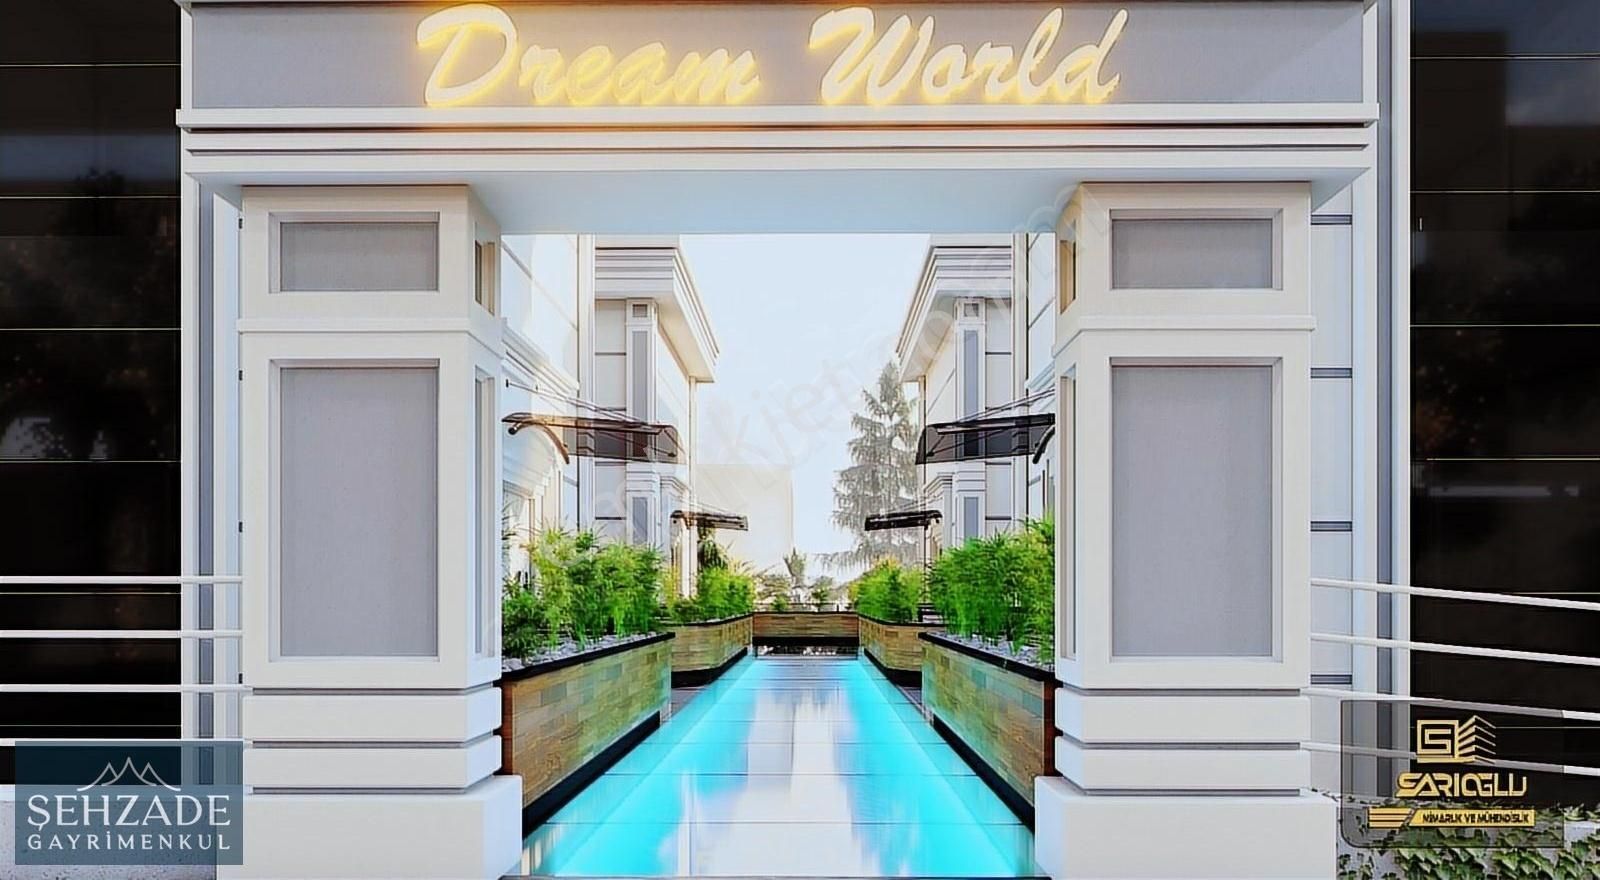 Merkezefendi Hallaçlar Satılık Villa ŞEHZADE'DEN HALLAÇLAR'DA DOĞA MANZARALI DREAM WORLD VİLLALARI